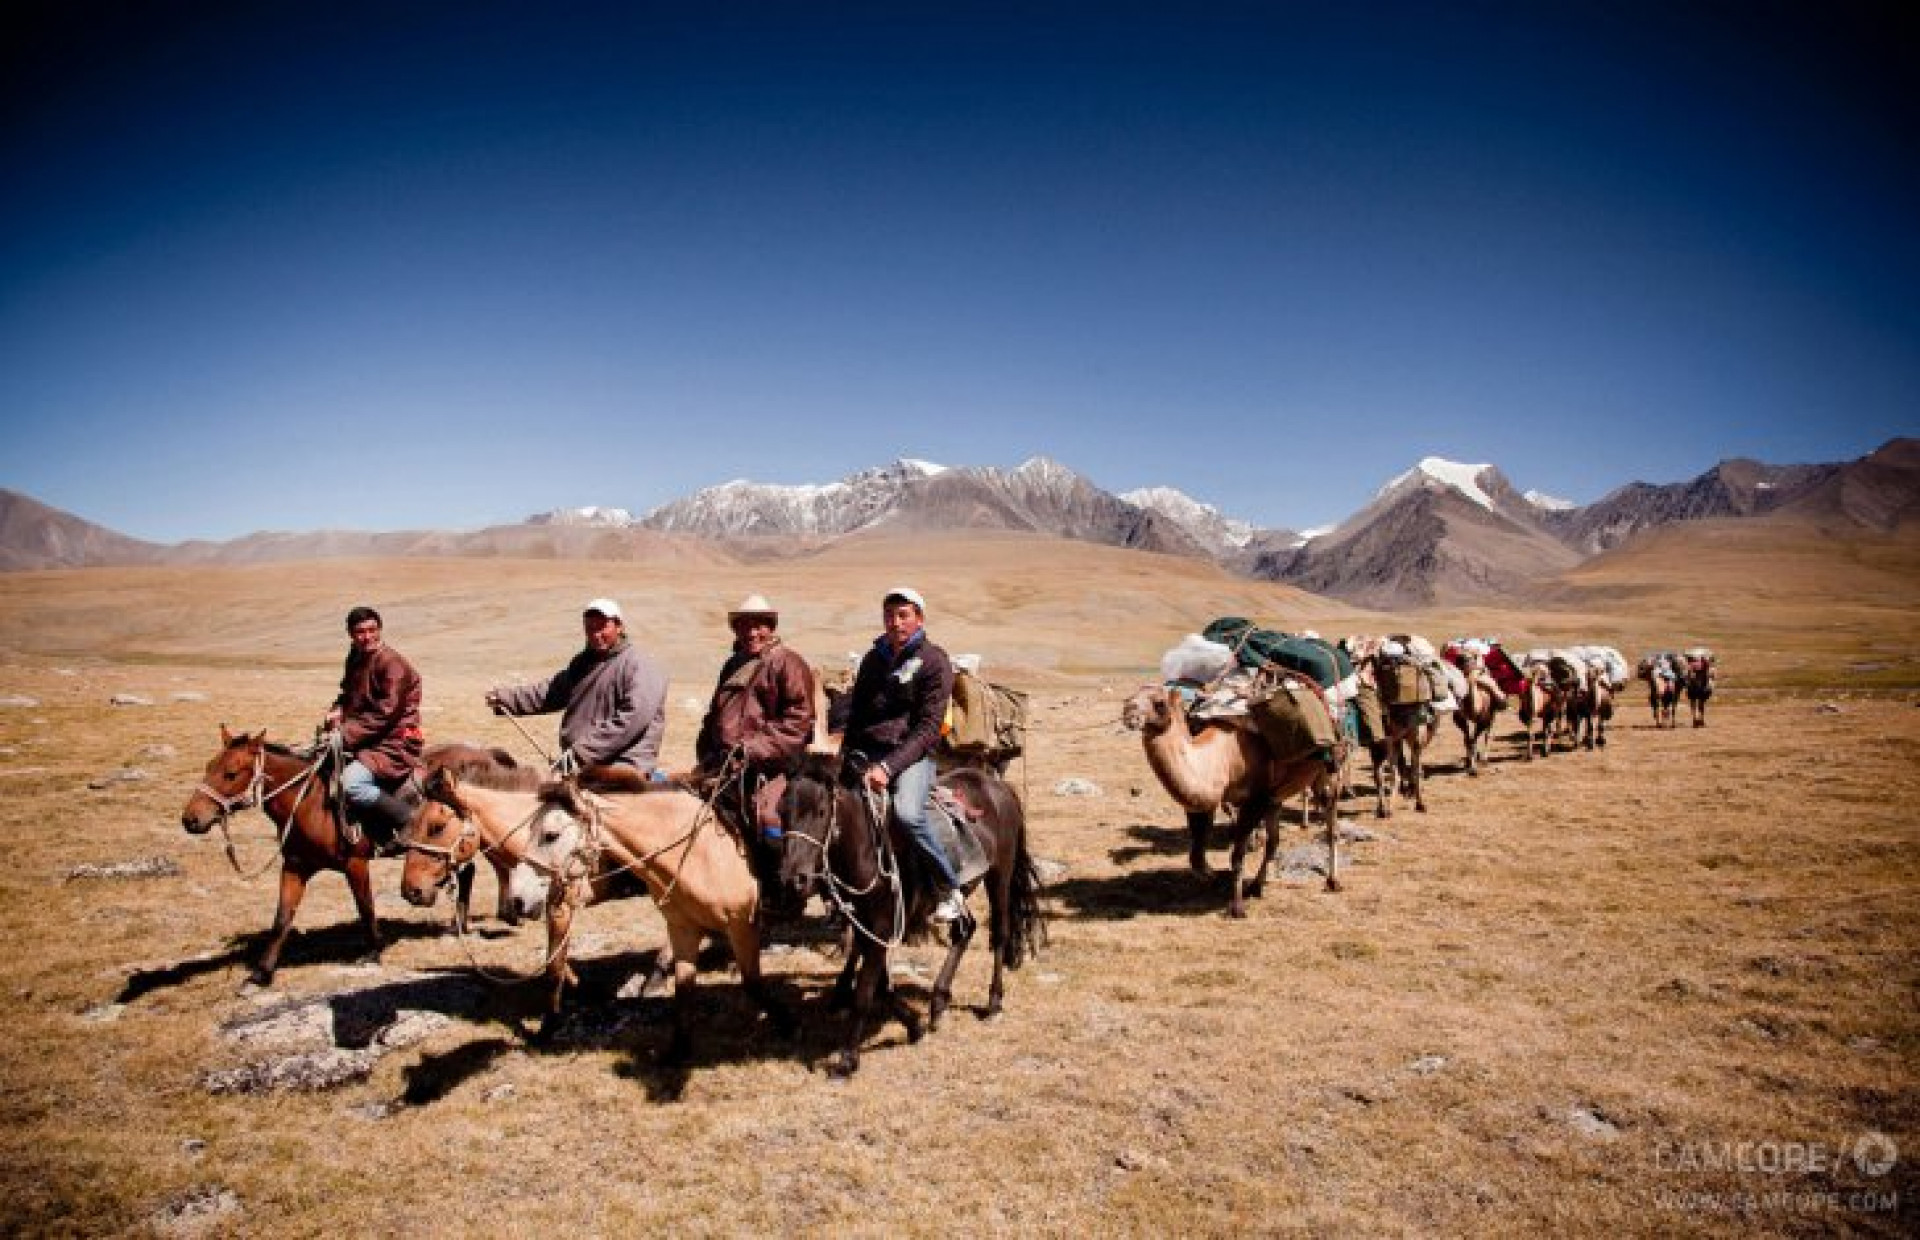 The Life of a Nomad in Mongolia's Gobi Desert